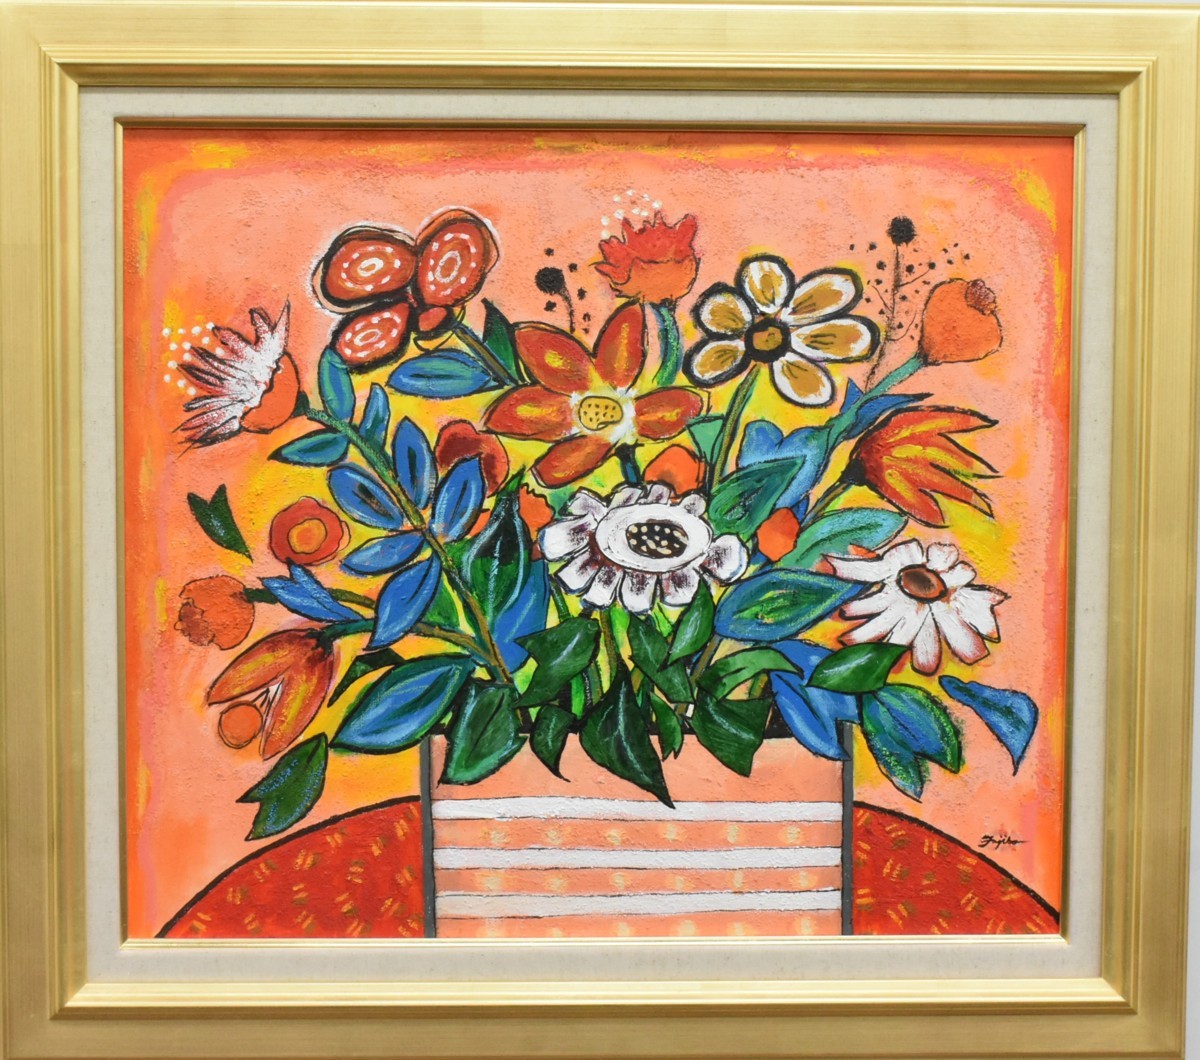 [Galería Masami] ¡Una nueva pintura al óleo de un artista popular! Fujiko Shirai, No. 10 Ramo enviado [5, 000 piezas en exhibición! Seguro que encontrarás una pieza que te guste], Cuadro, Pintura al óleo, Naturaleza muerta